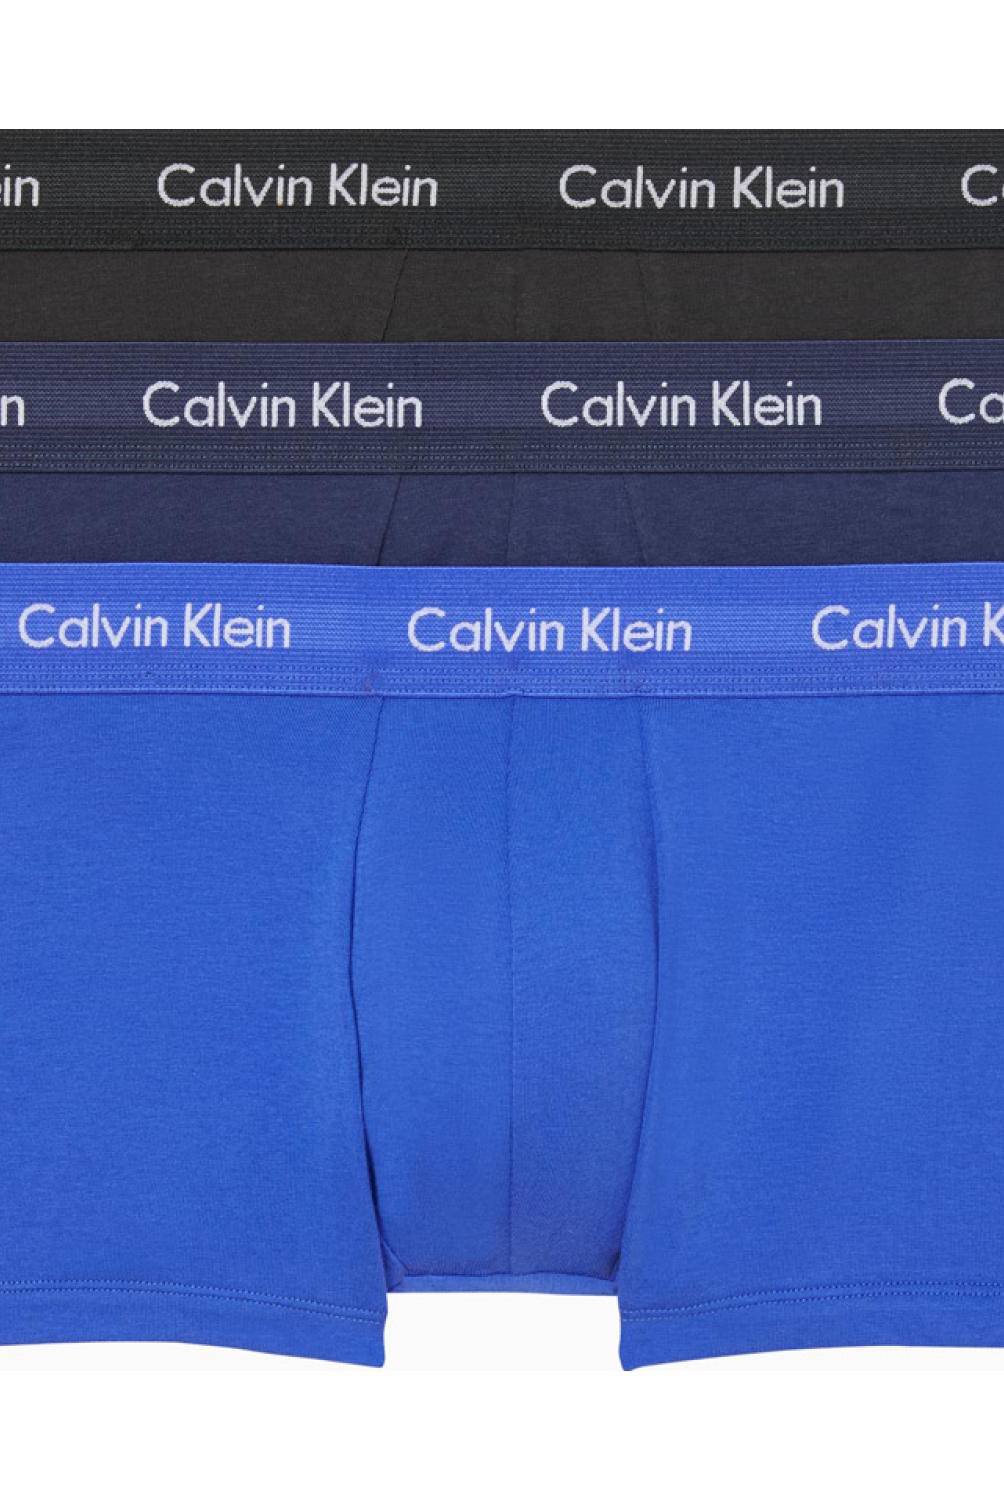 CALVIN KLEIN/Pack de 3 Boxer Hombre Algodón Calvin Klein